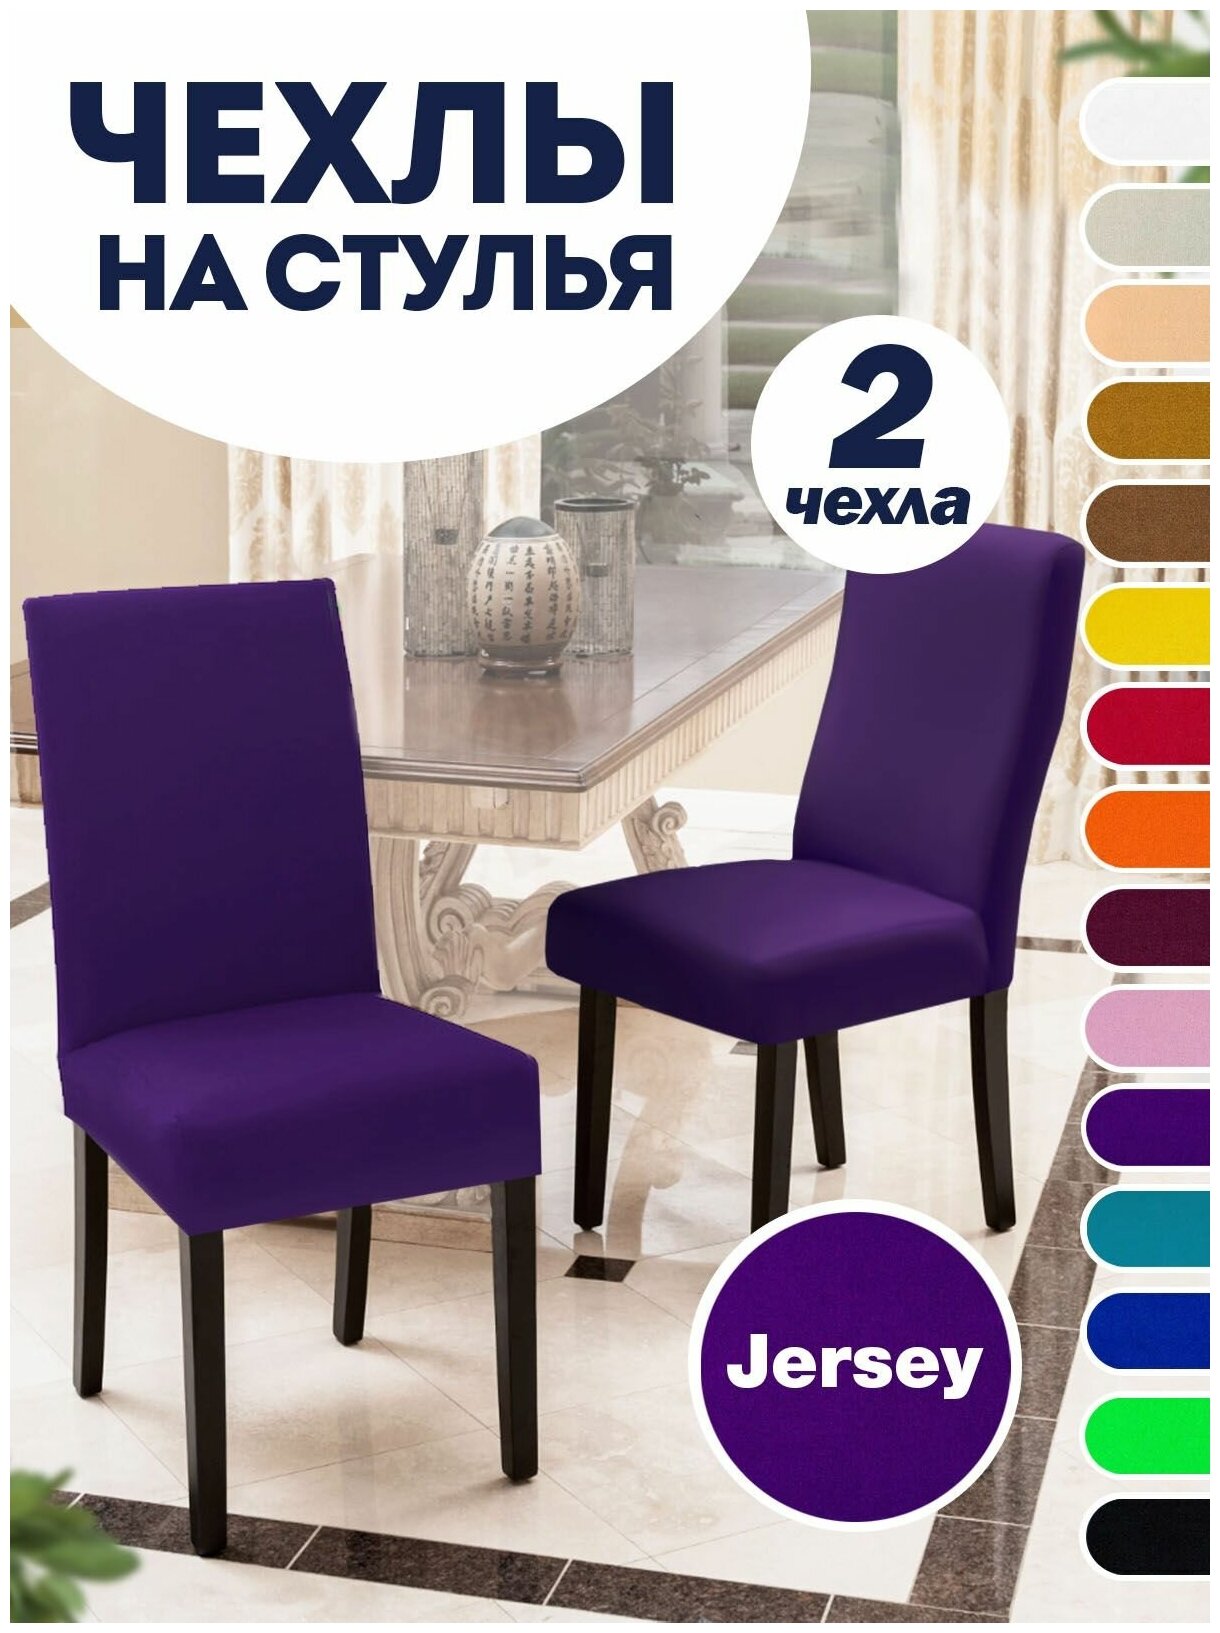 Чехол на стул, чехол для стула со спинкой, чехлы для стульев, Коллекция "Jersey", Фиолетовый, Комплект 2 шт.